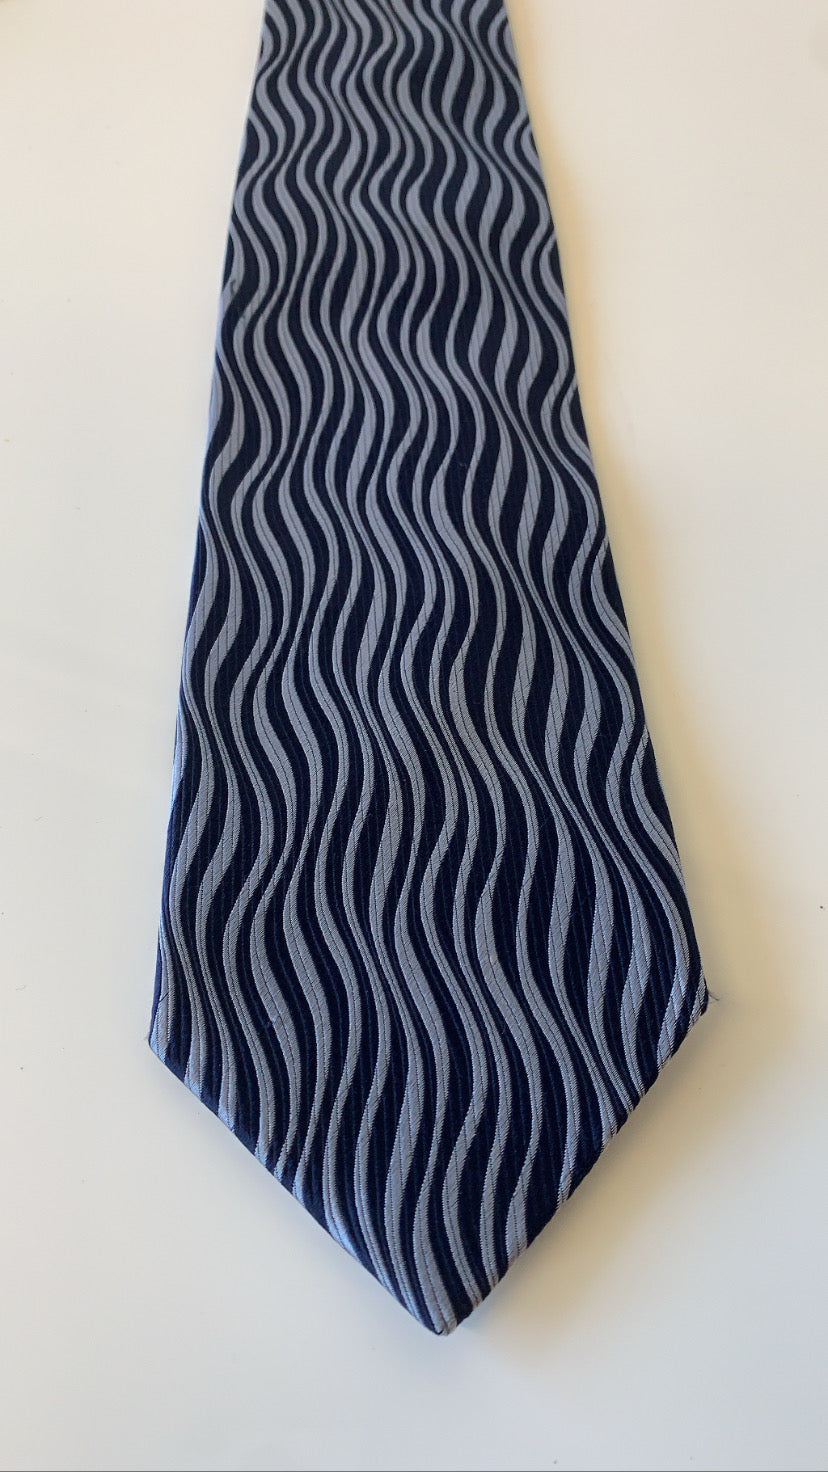 Groovy Blue Tie